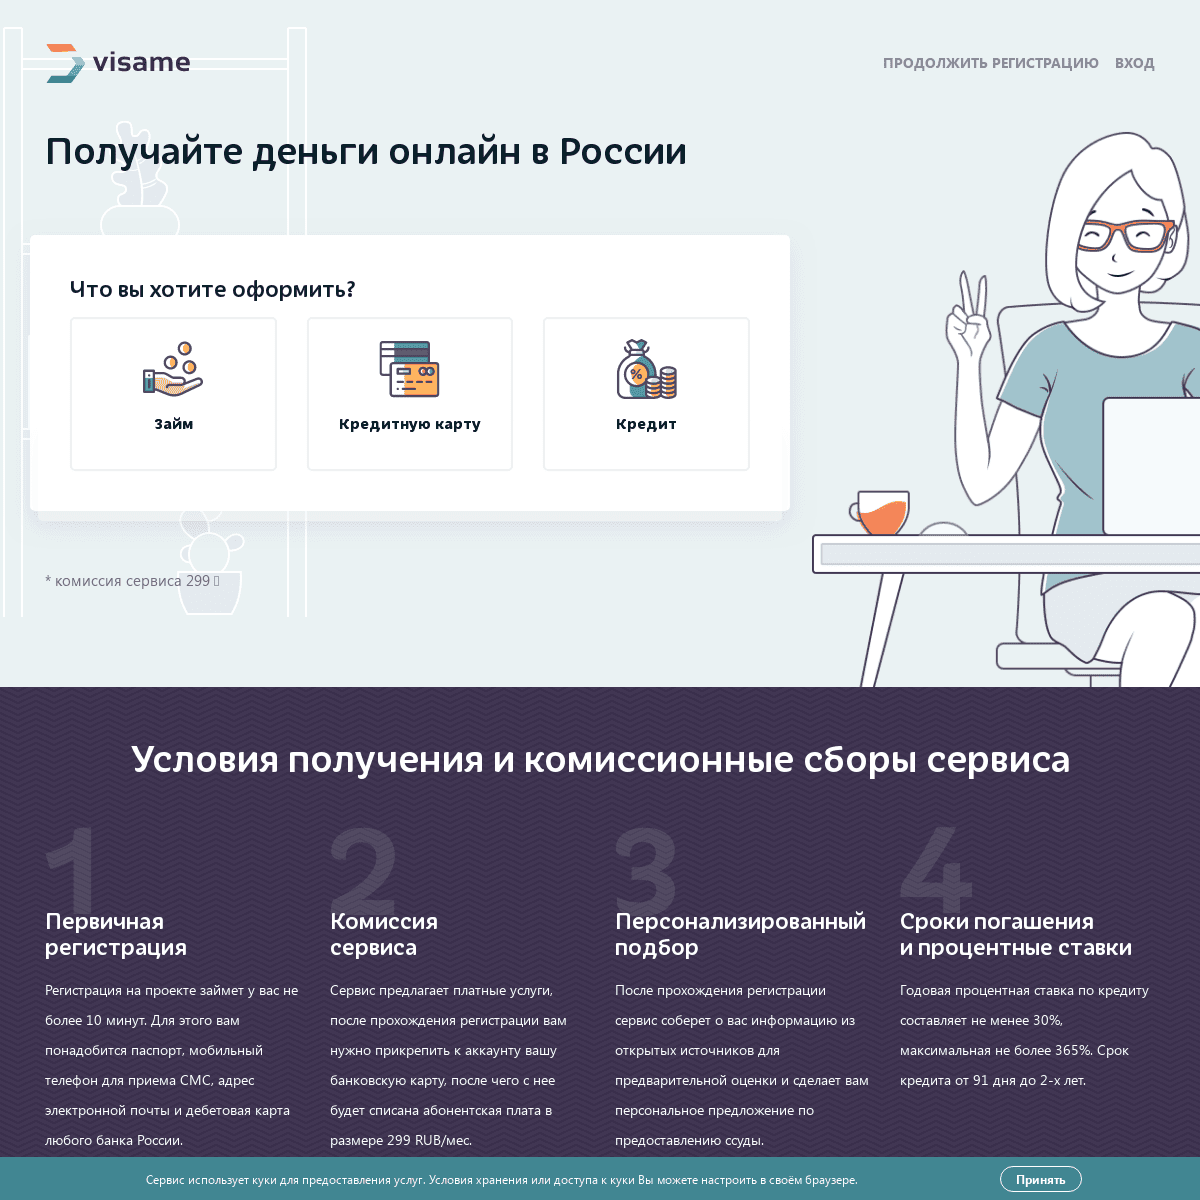 Visame - Получайте деньги онлайн в России.